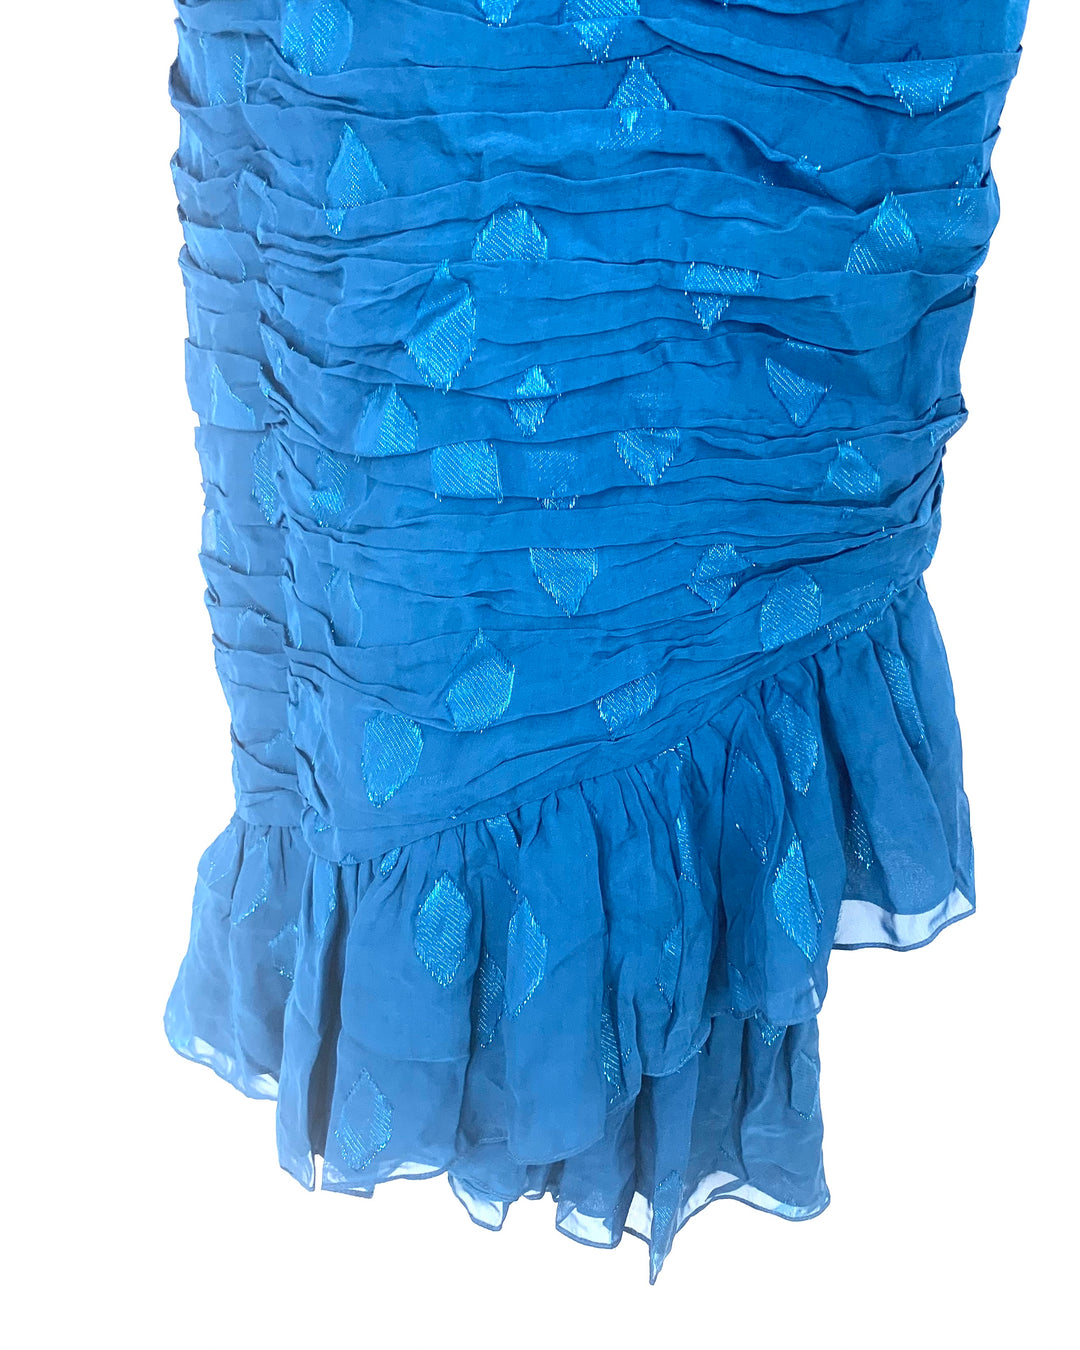 Cerulean Blue Off-the-Shoulder Cocktail Dress - Size 2/4